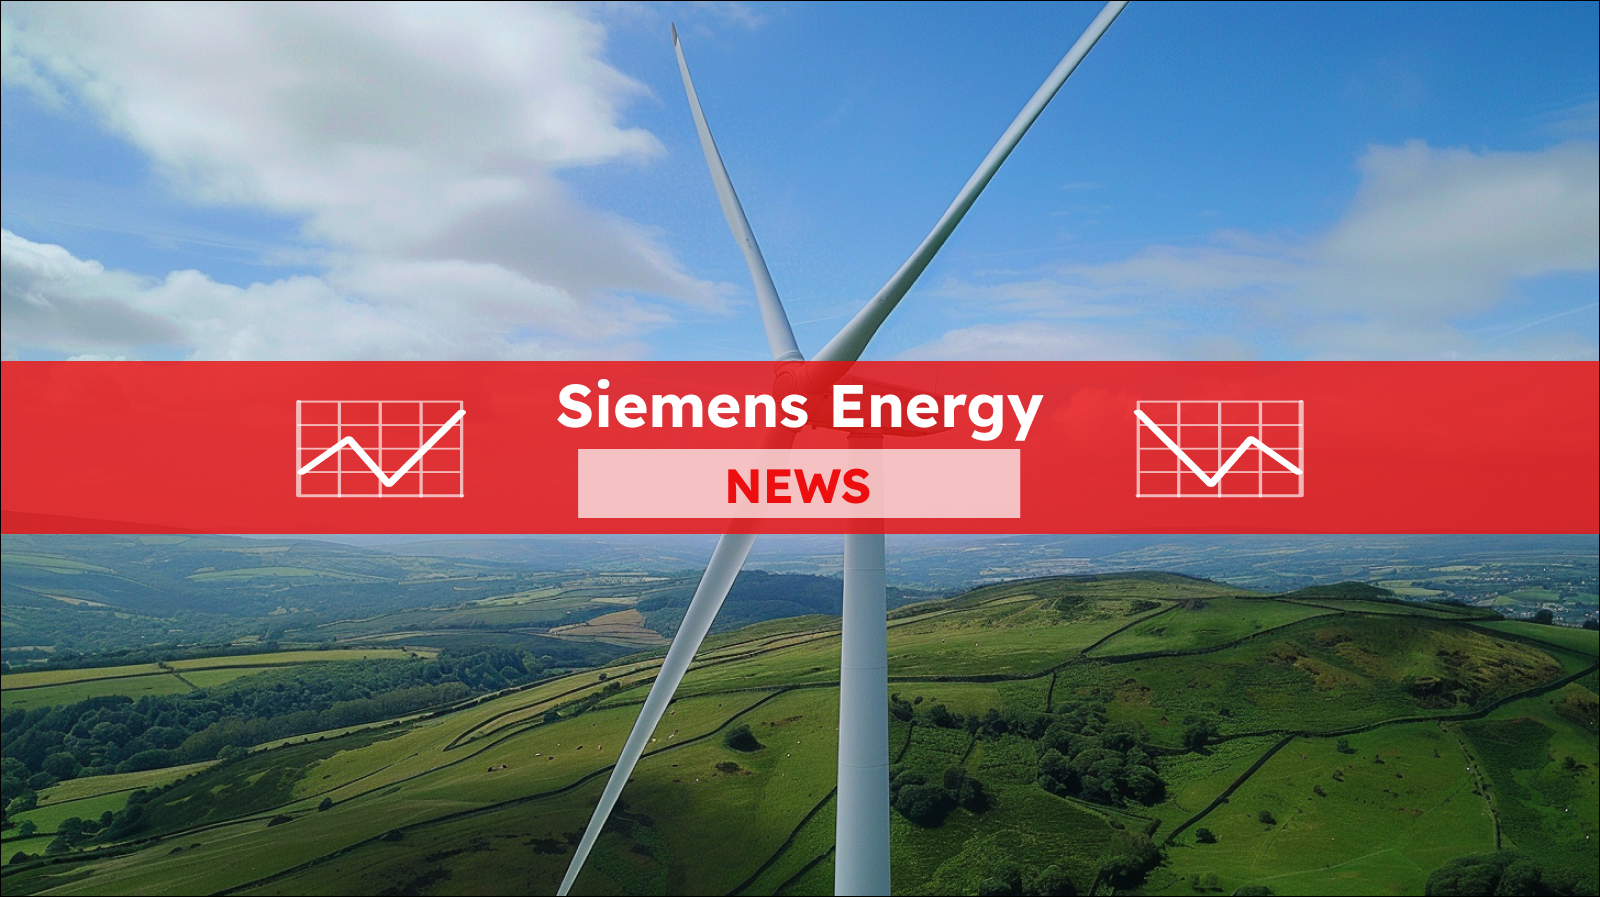 Eine große Windkraftanlage, die vor einem blauen Himmel über einer grünen Landschaft steht, Nahaufnahme, mit einem roten Banner Siemens Energy NEWS